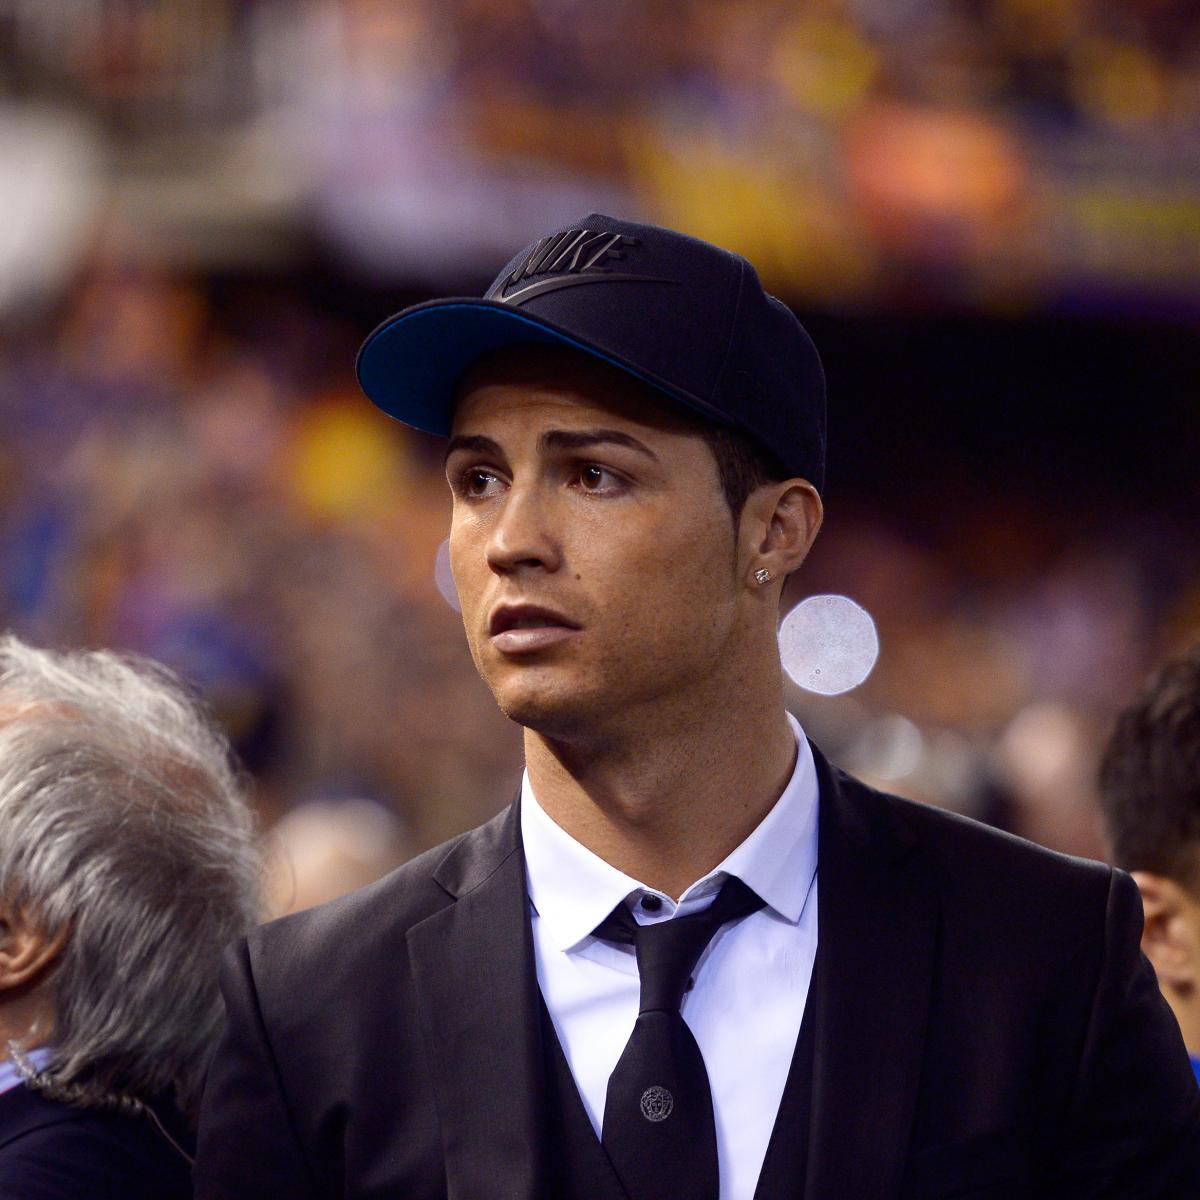 Cristiano Ronaldo Rocks a Baseball Cap at the Copa Del Rey | Bleacher Report | Latest ...1200 x 1200